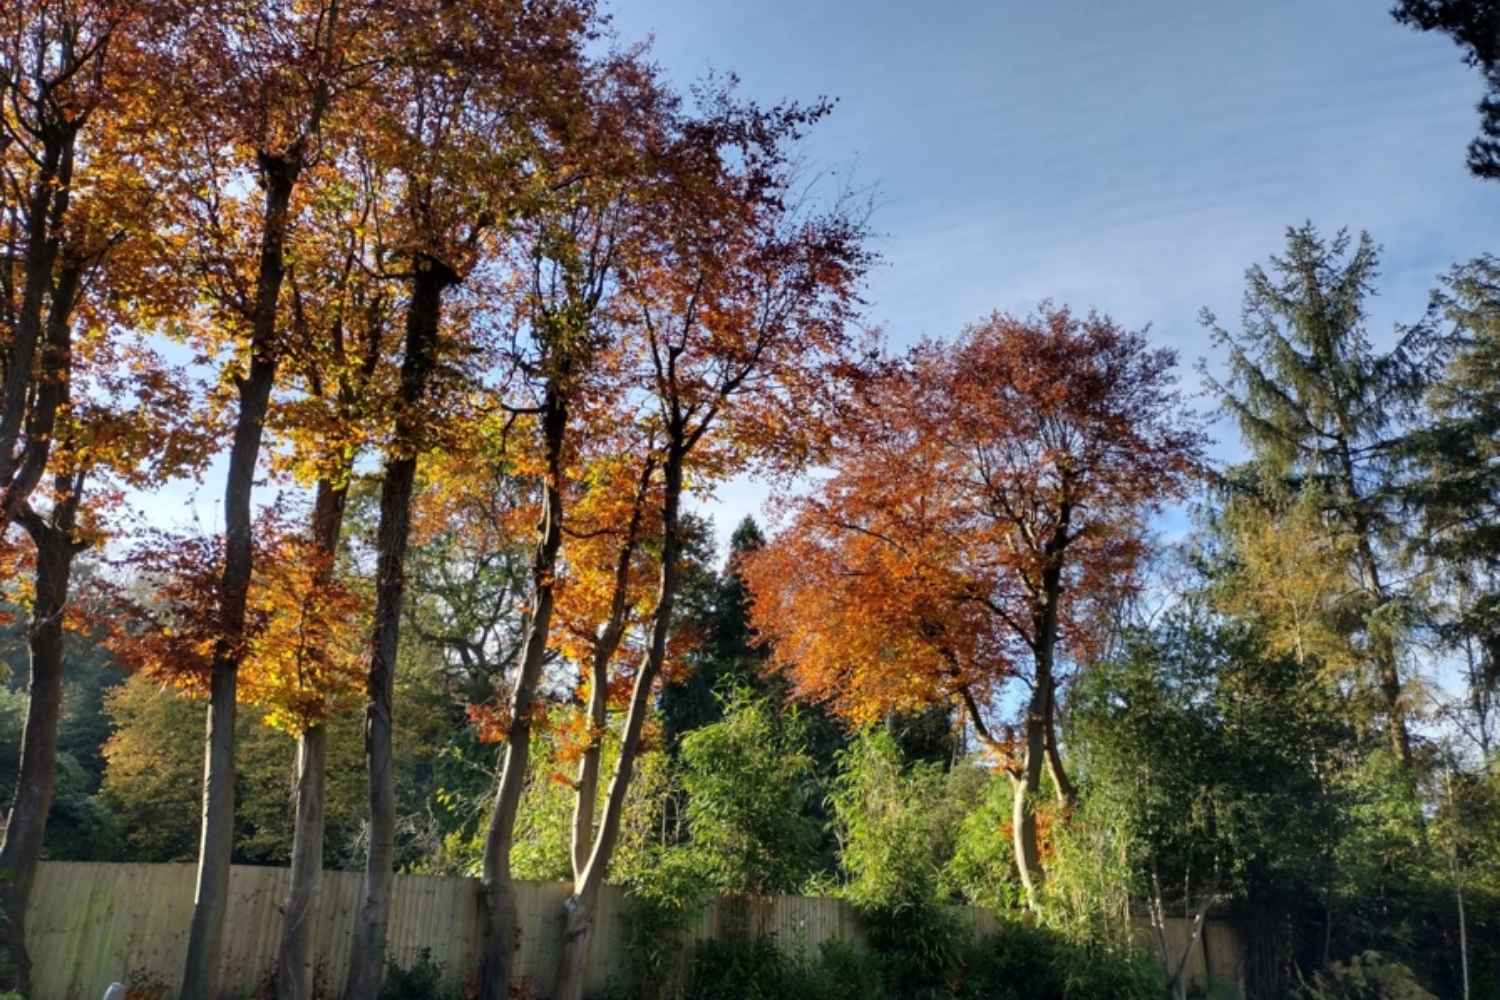 Glorious autumn colour in the garden